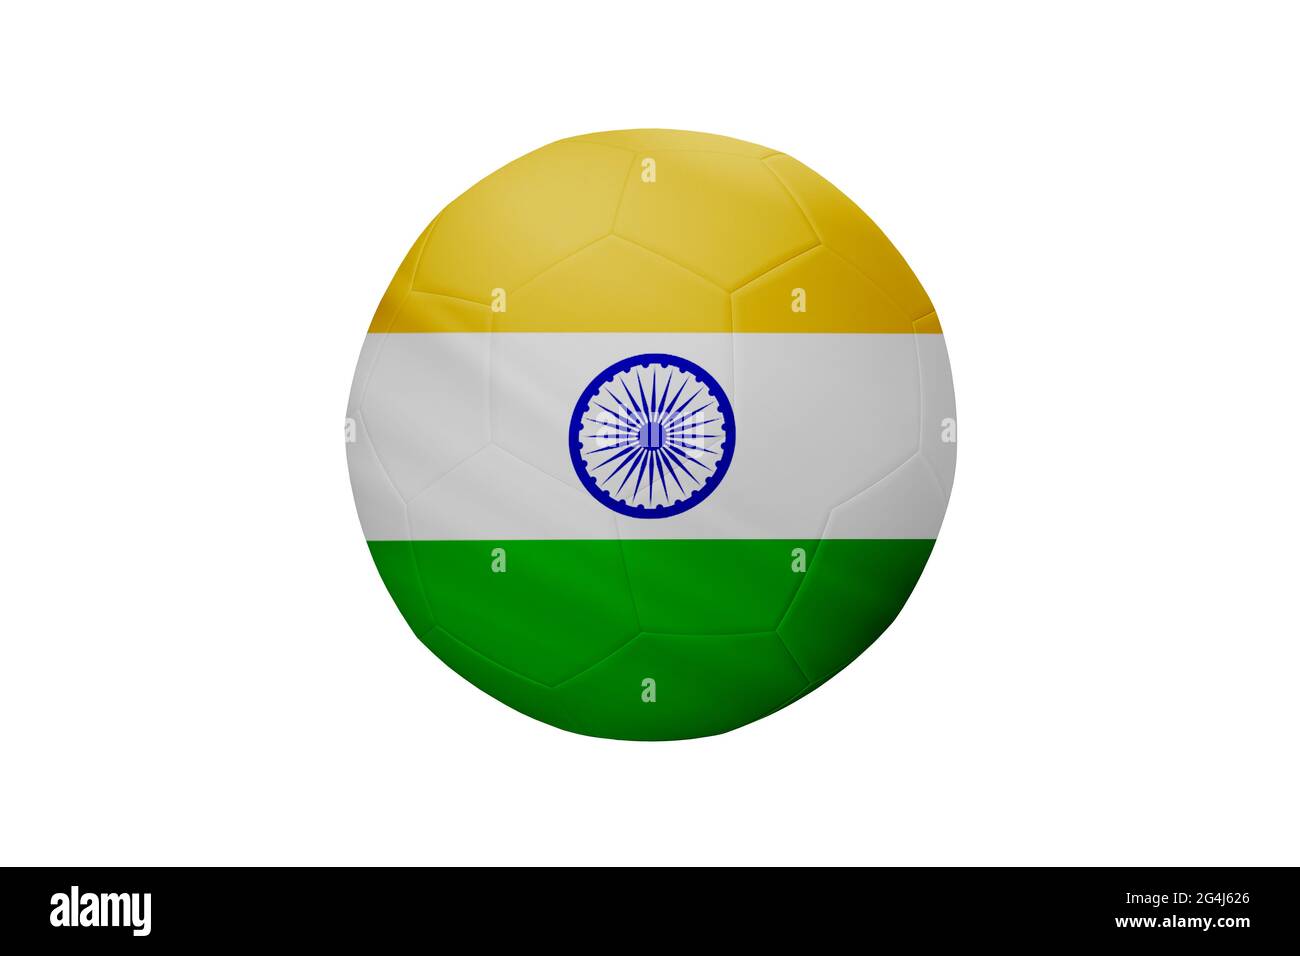 Fußball in den Farben der indischen Flagge isoliert auf weißem Hintergrund. In einem konzeptionellen Meisterschaftsbild, das Indien unterstützt. Stockfoto